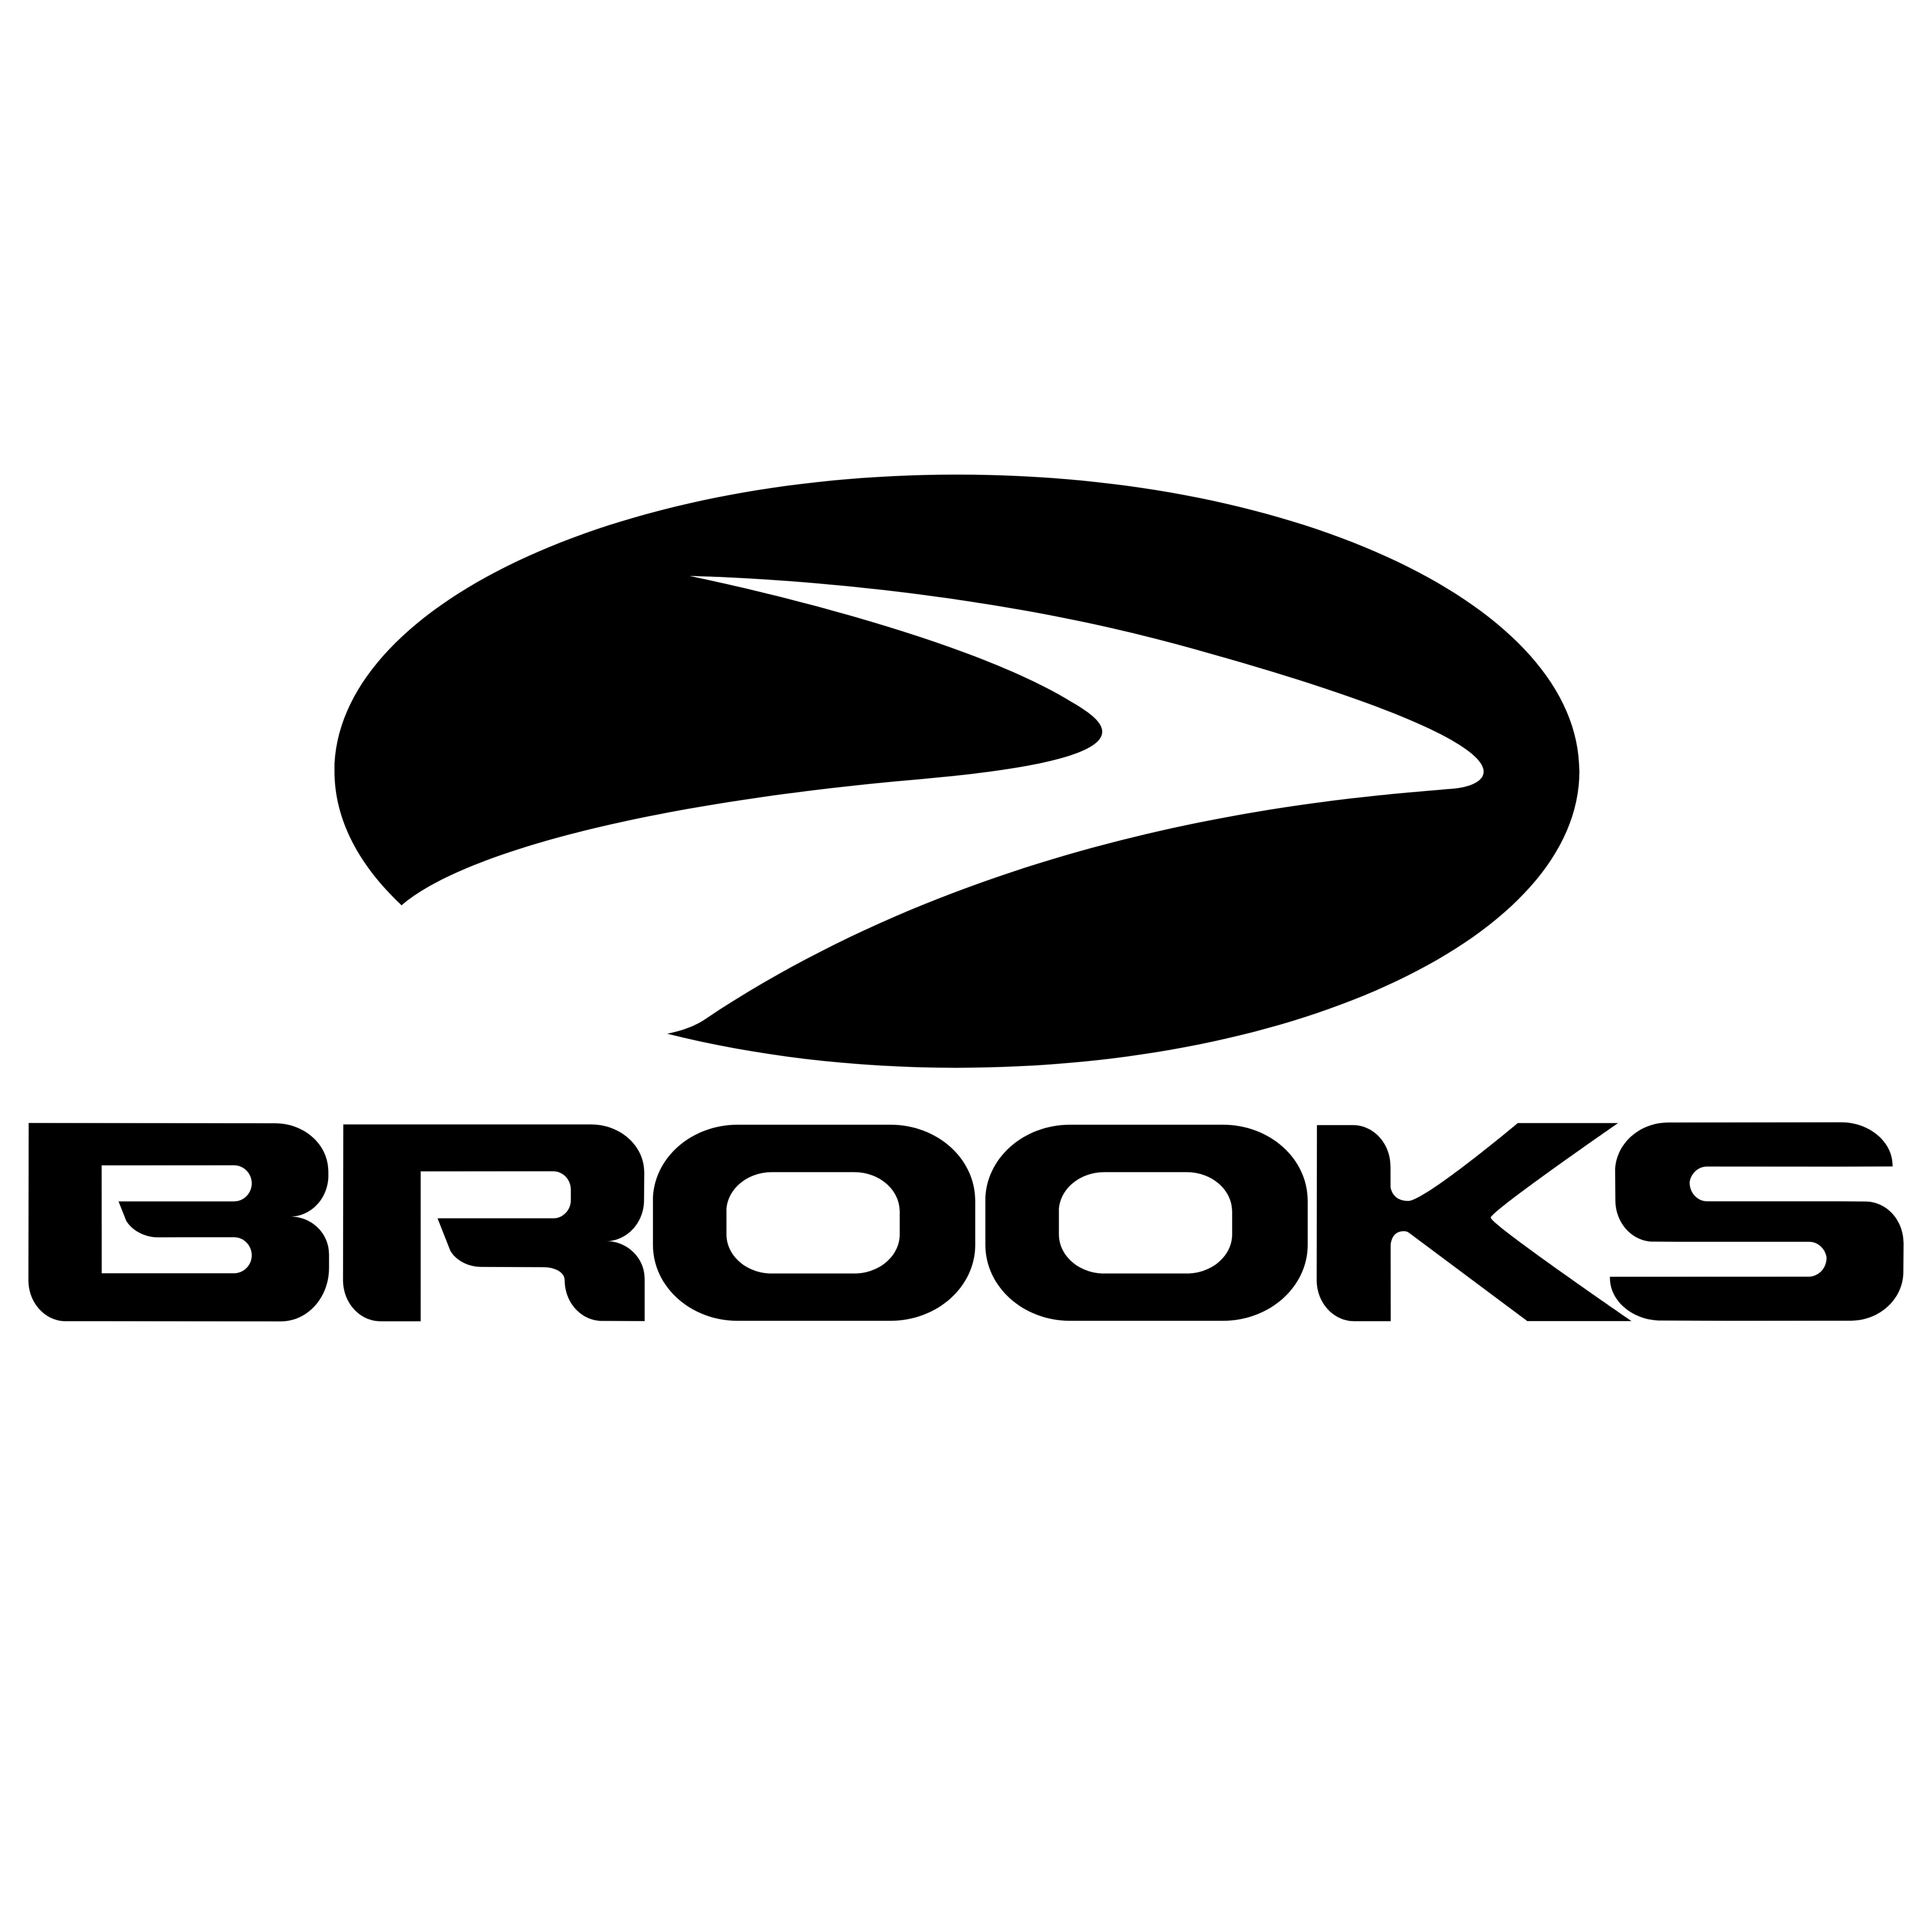 Brooks Logo - Brooks – Logos Download